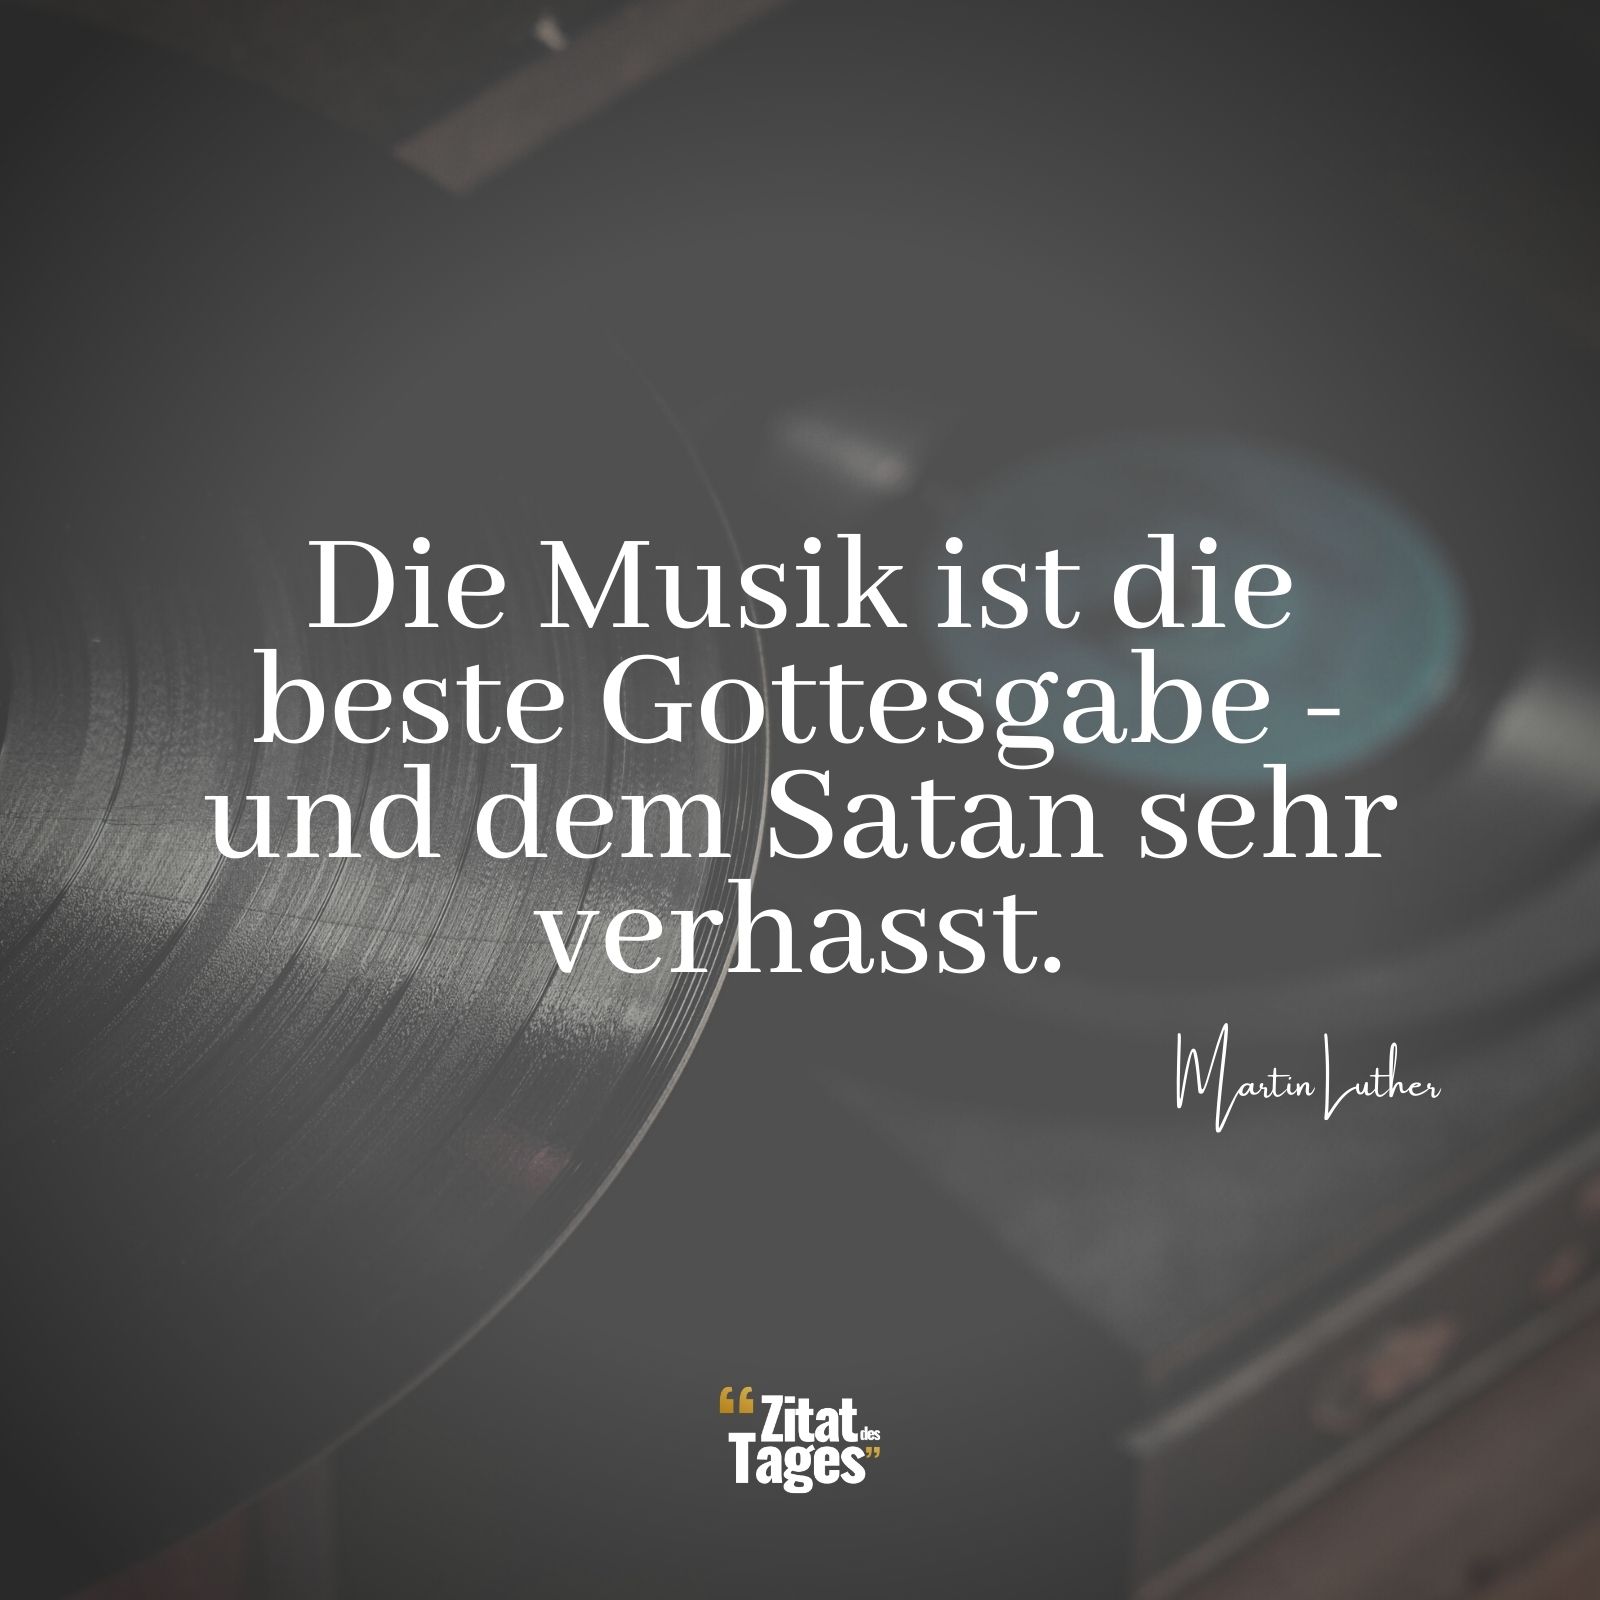 Die Musik ist die beste Gottesgabe - und dem Satan sehr verhasst. - Martin Luther